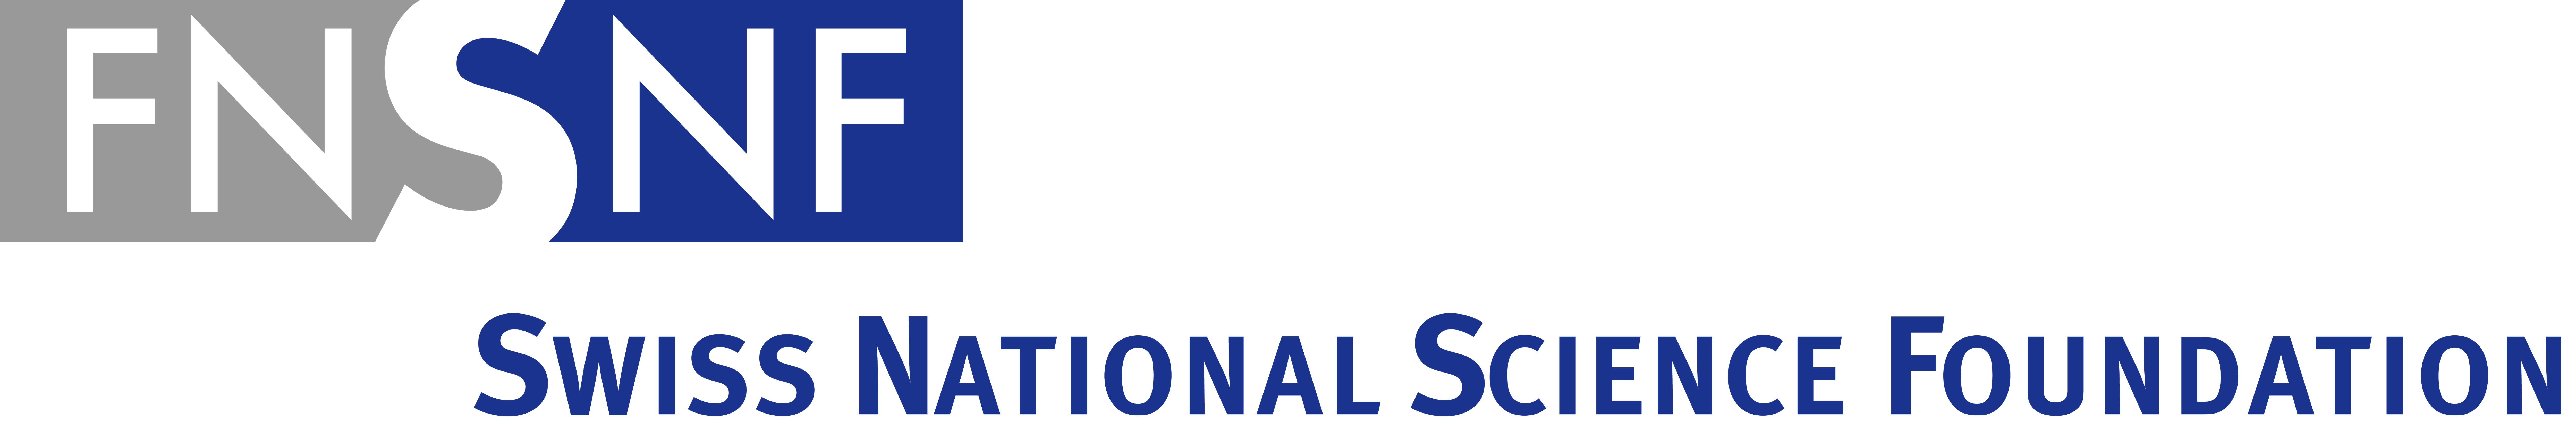 Национальный научный фонд США. "National Science Foundation" "Cyber-physical Systems". Национальный научный фонд США (NSF).